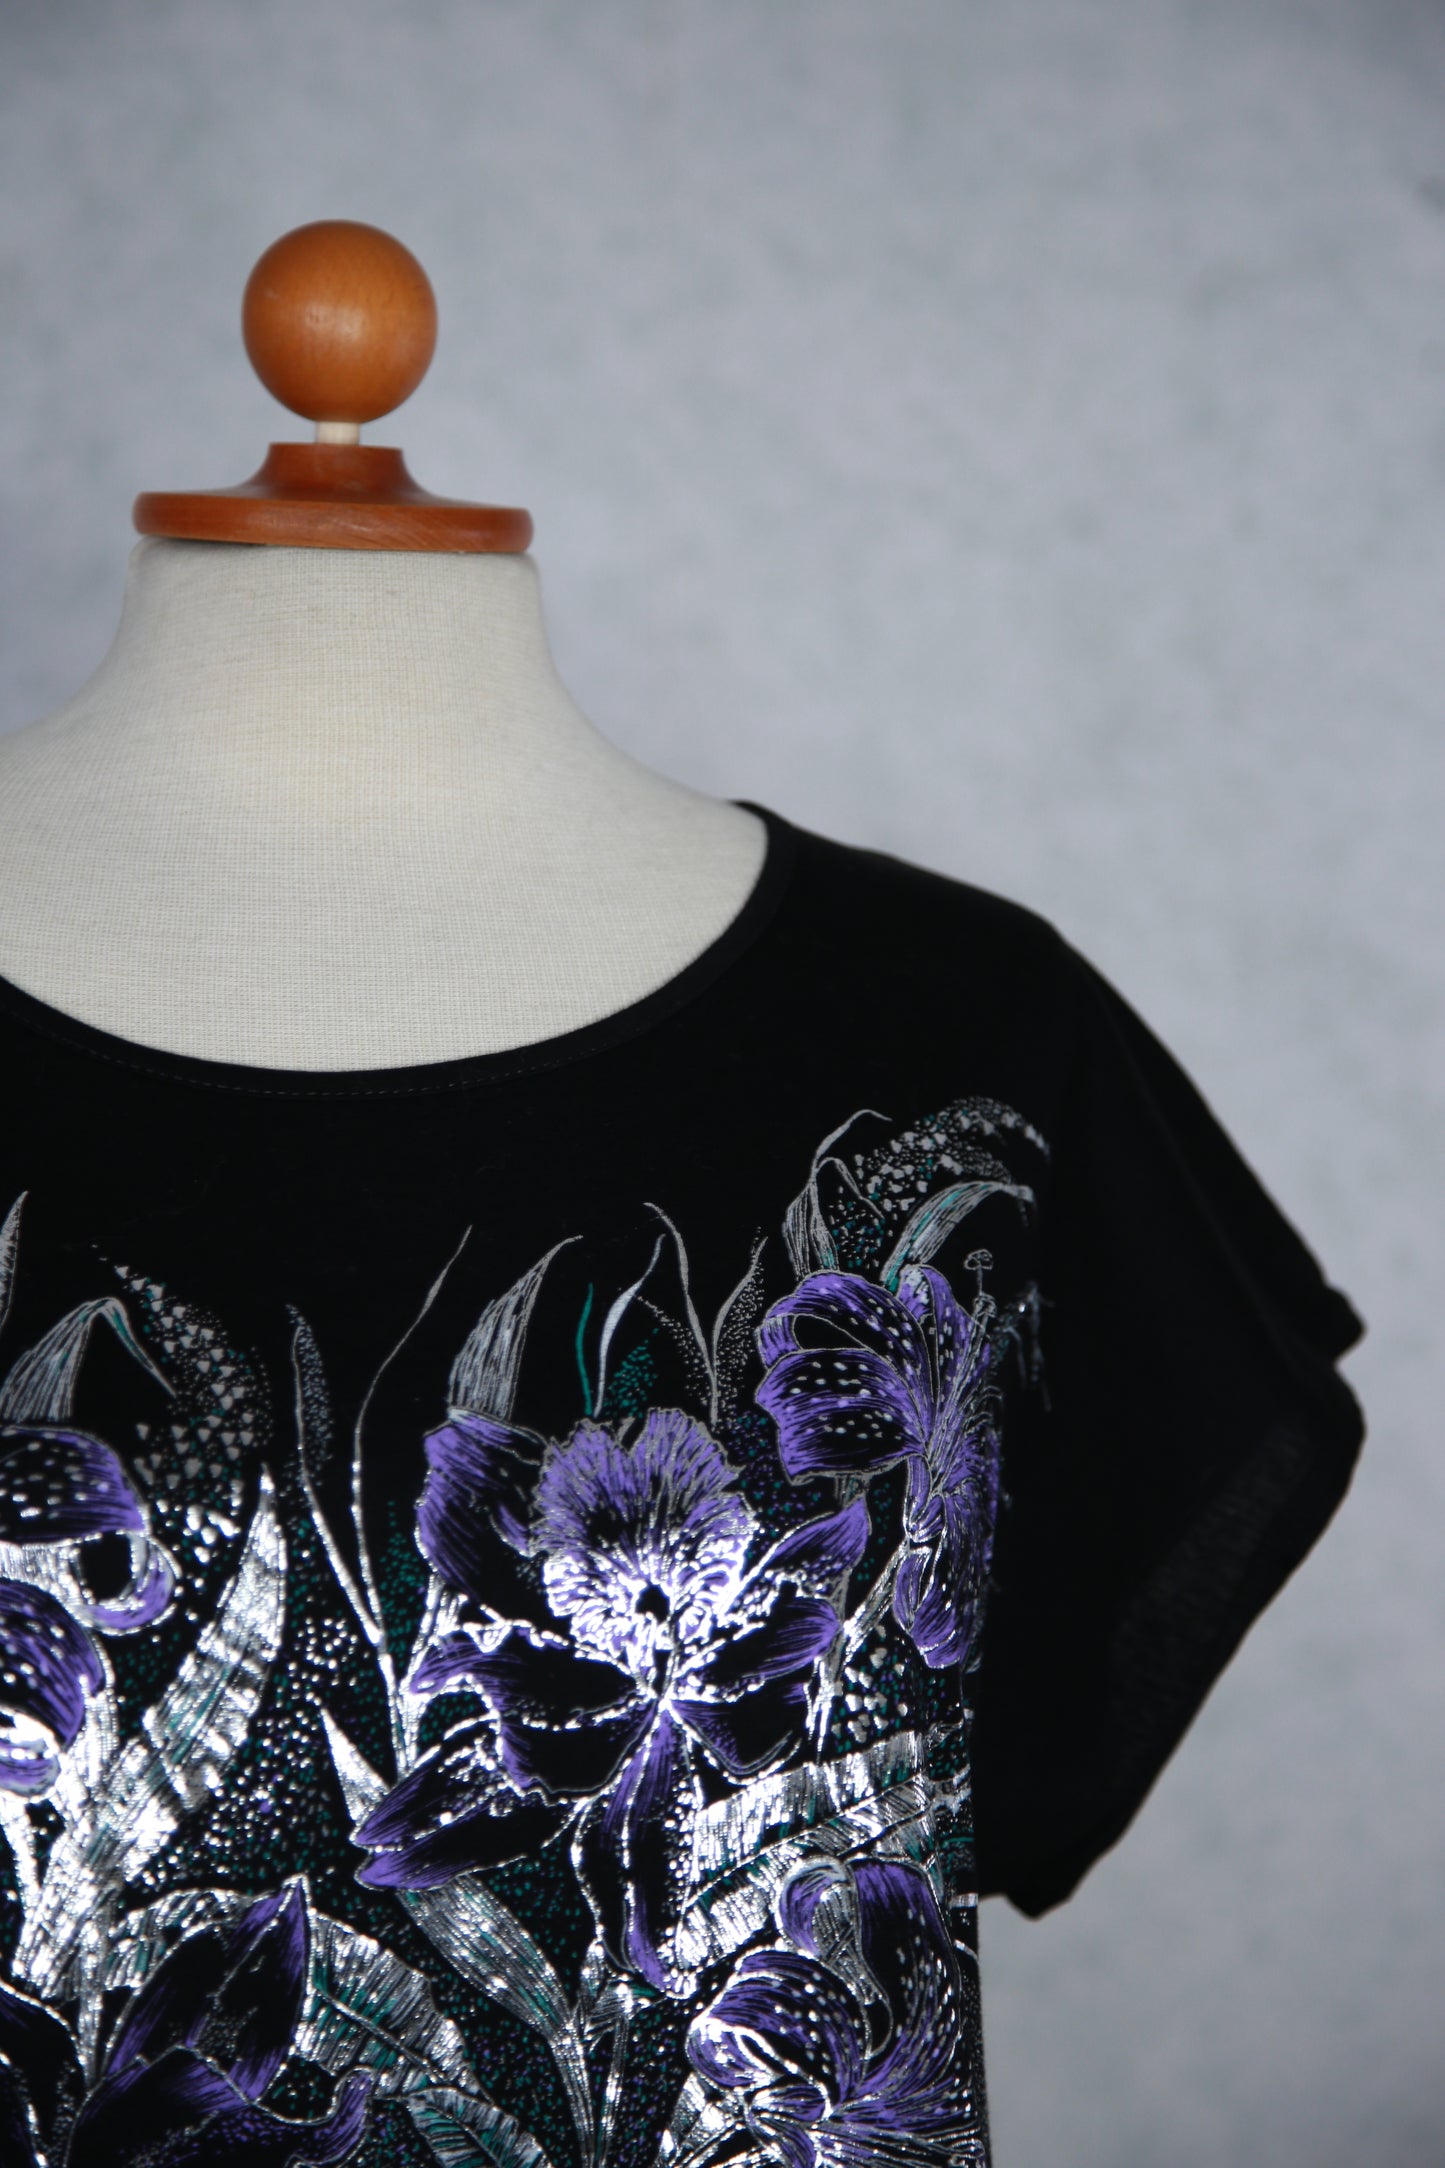 Musta kukkakuviollinen t-paita